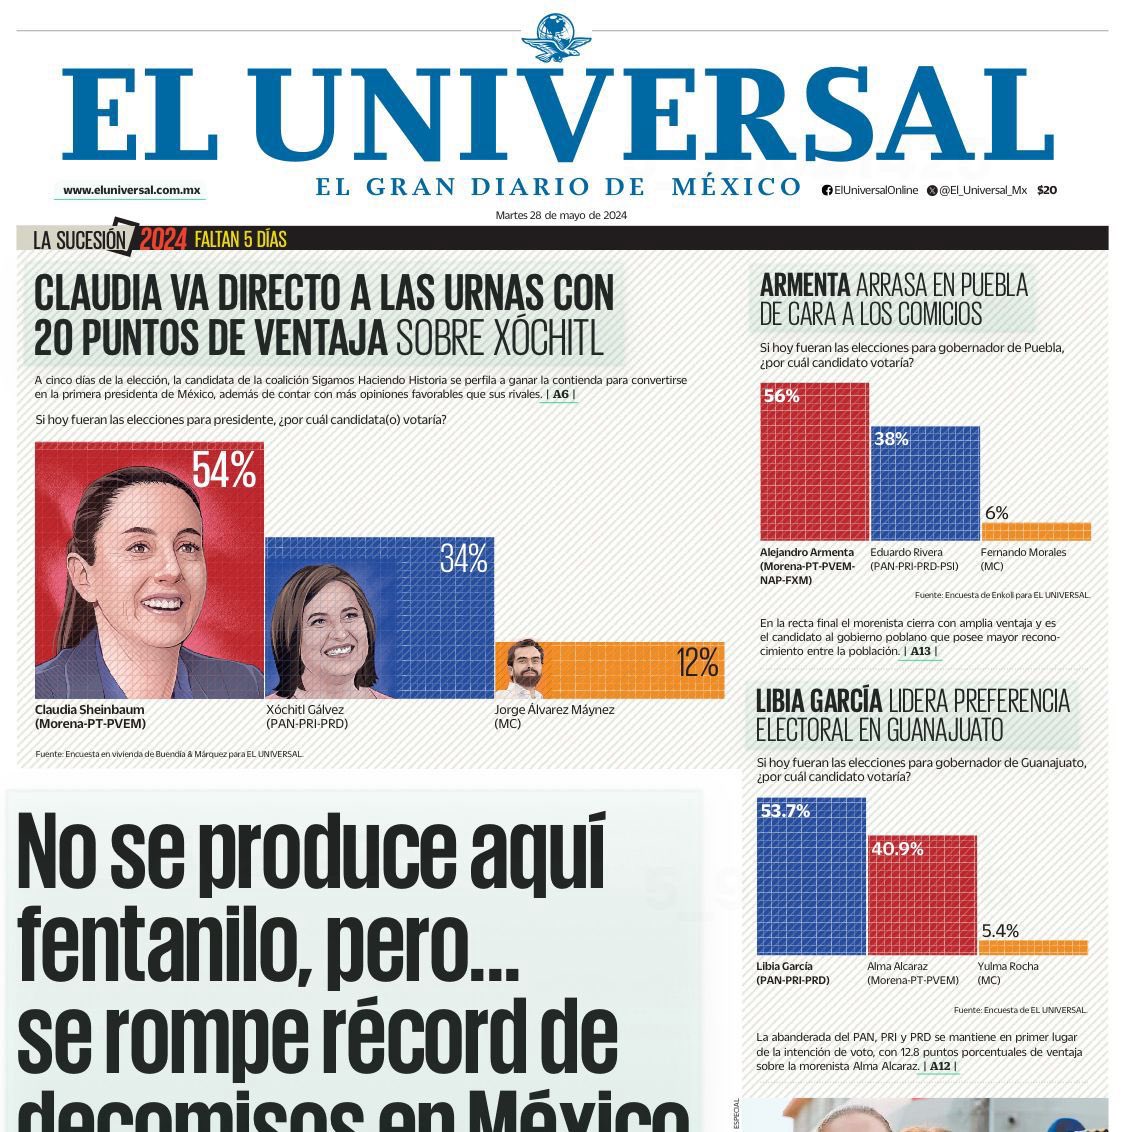 Buenos días, Alegría. 

#ClaudiaPresidenta 
Heraldo, Covarrubias.
Reporte Índigo, FactoMetrica.
El Universal.